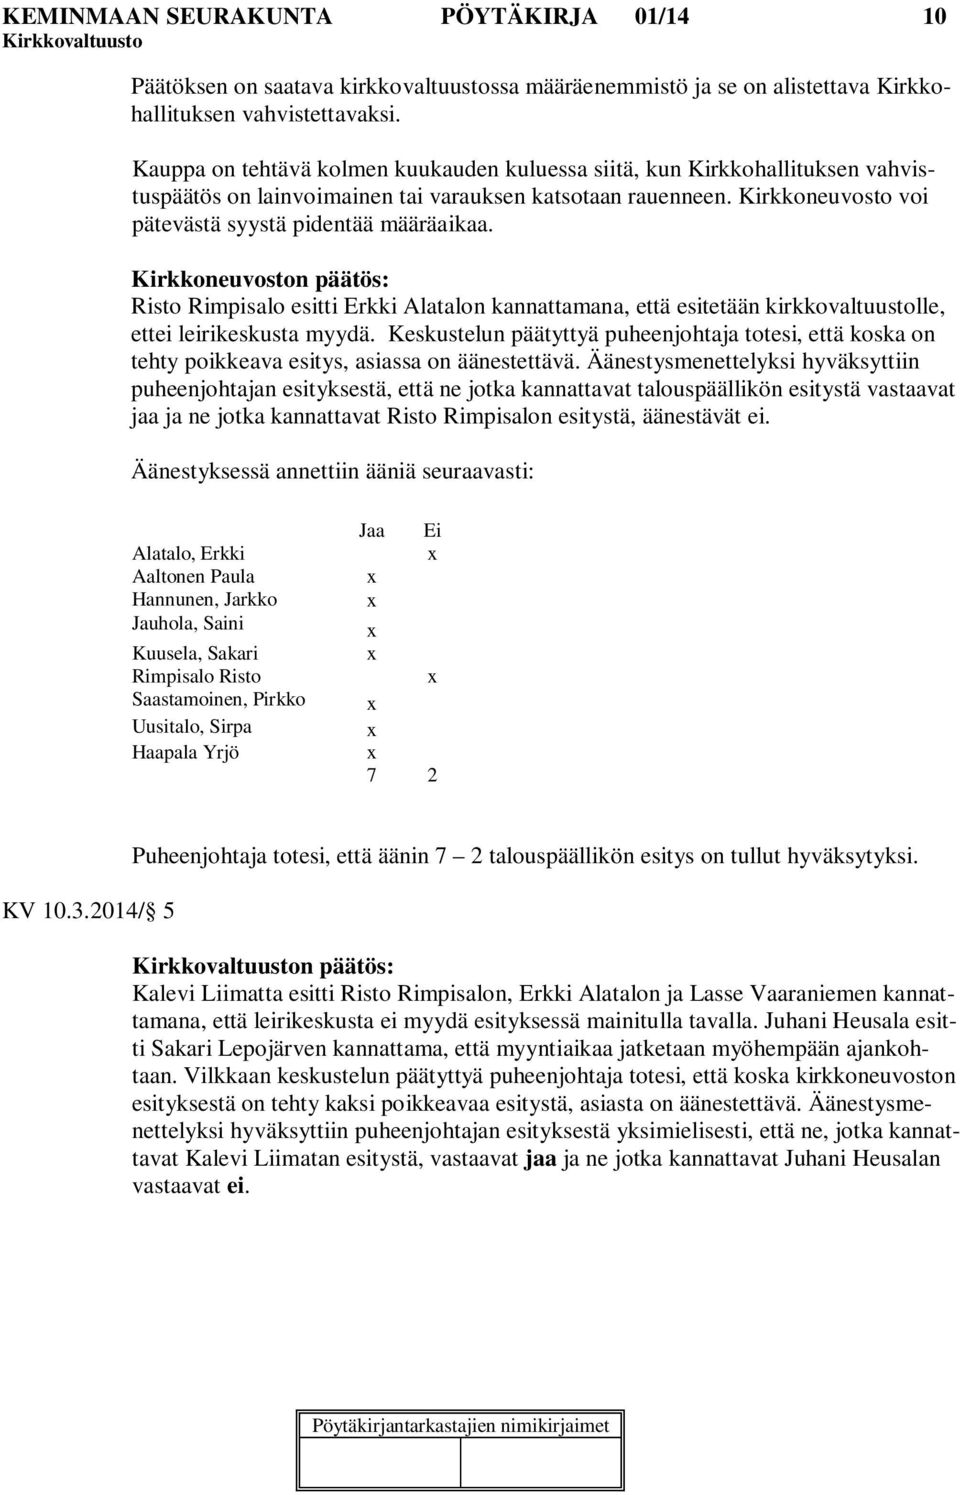 Kirkkoneuvoston päätös: Risto Rimpisalo esitti Erkki Alatalon kannattamana, että esitetään kirkkovaltuustolle, ettei leirikeskusta myydä.